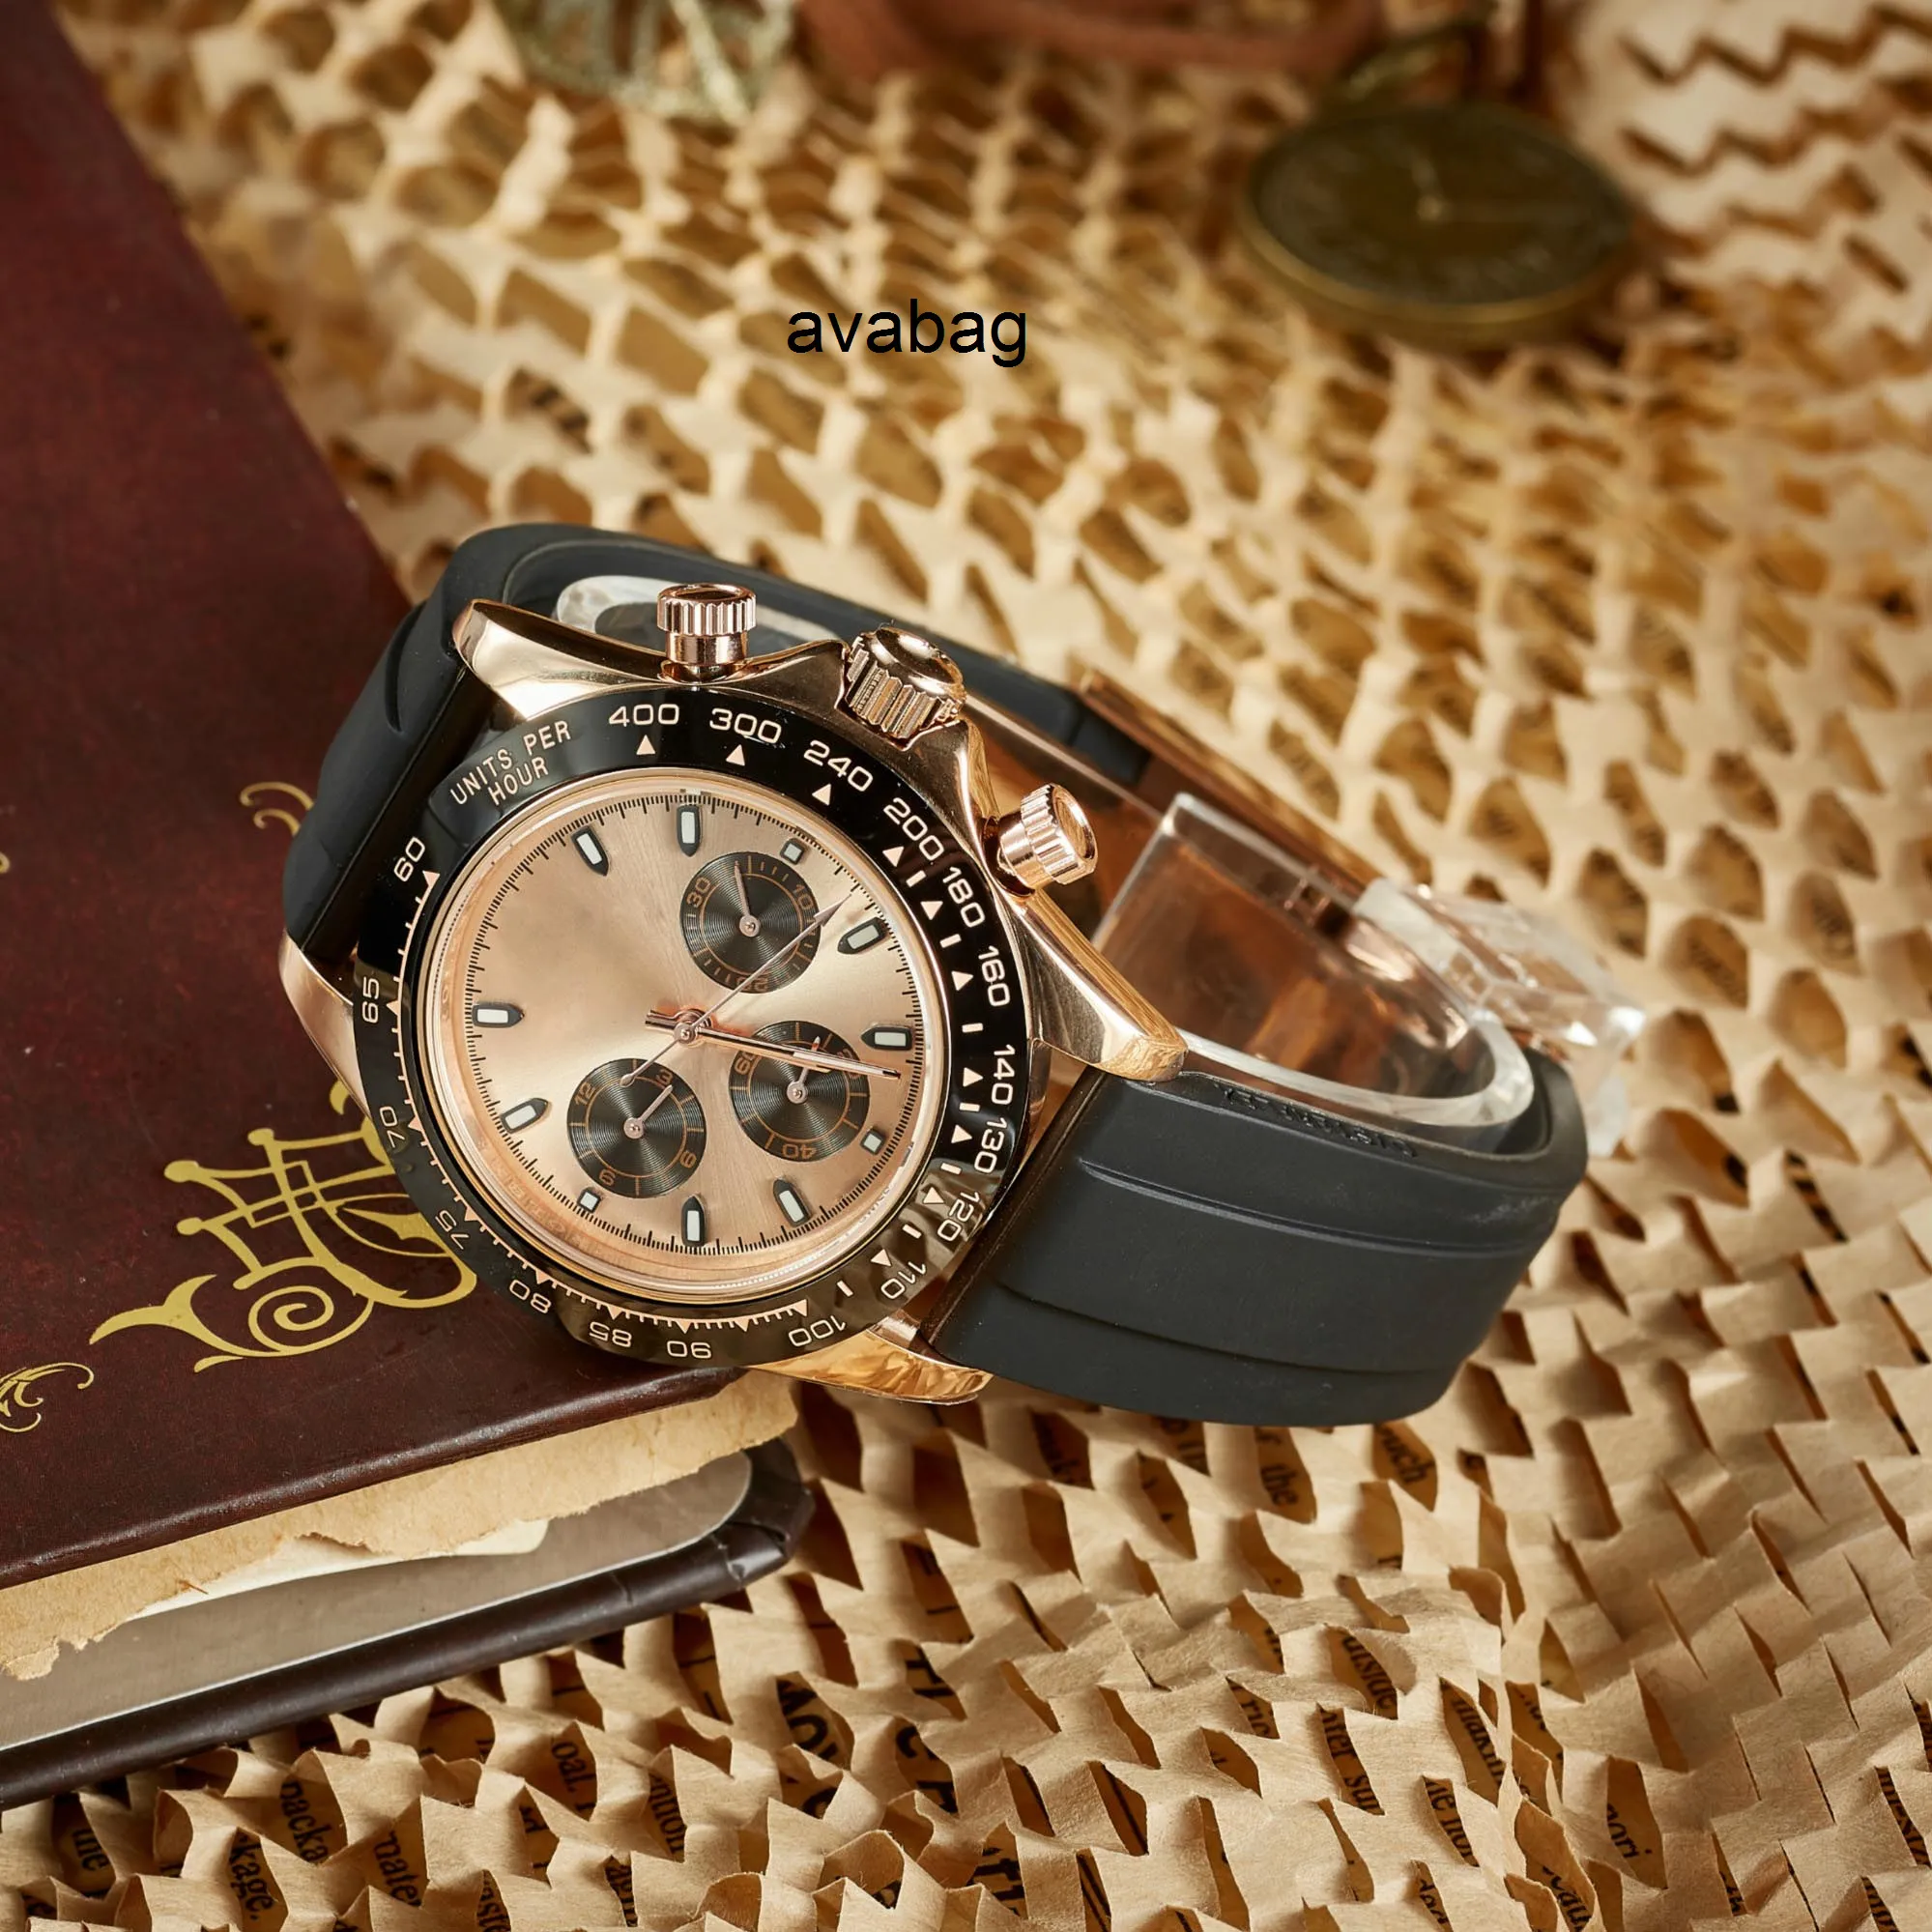 ZDR-hohe Qualität Modestil 2813 Automatische Bewegung Watches Full Edelstahl Sport Männer beobachten leuchtende Montre de Luxe Armband253f